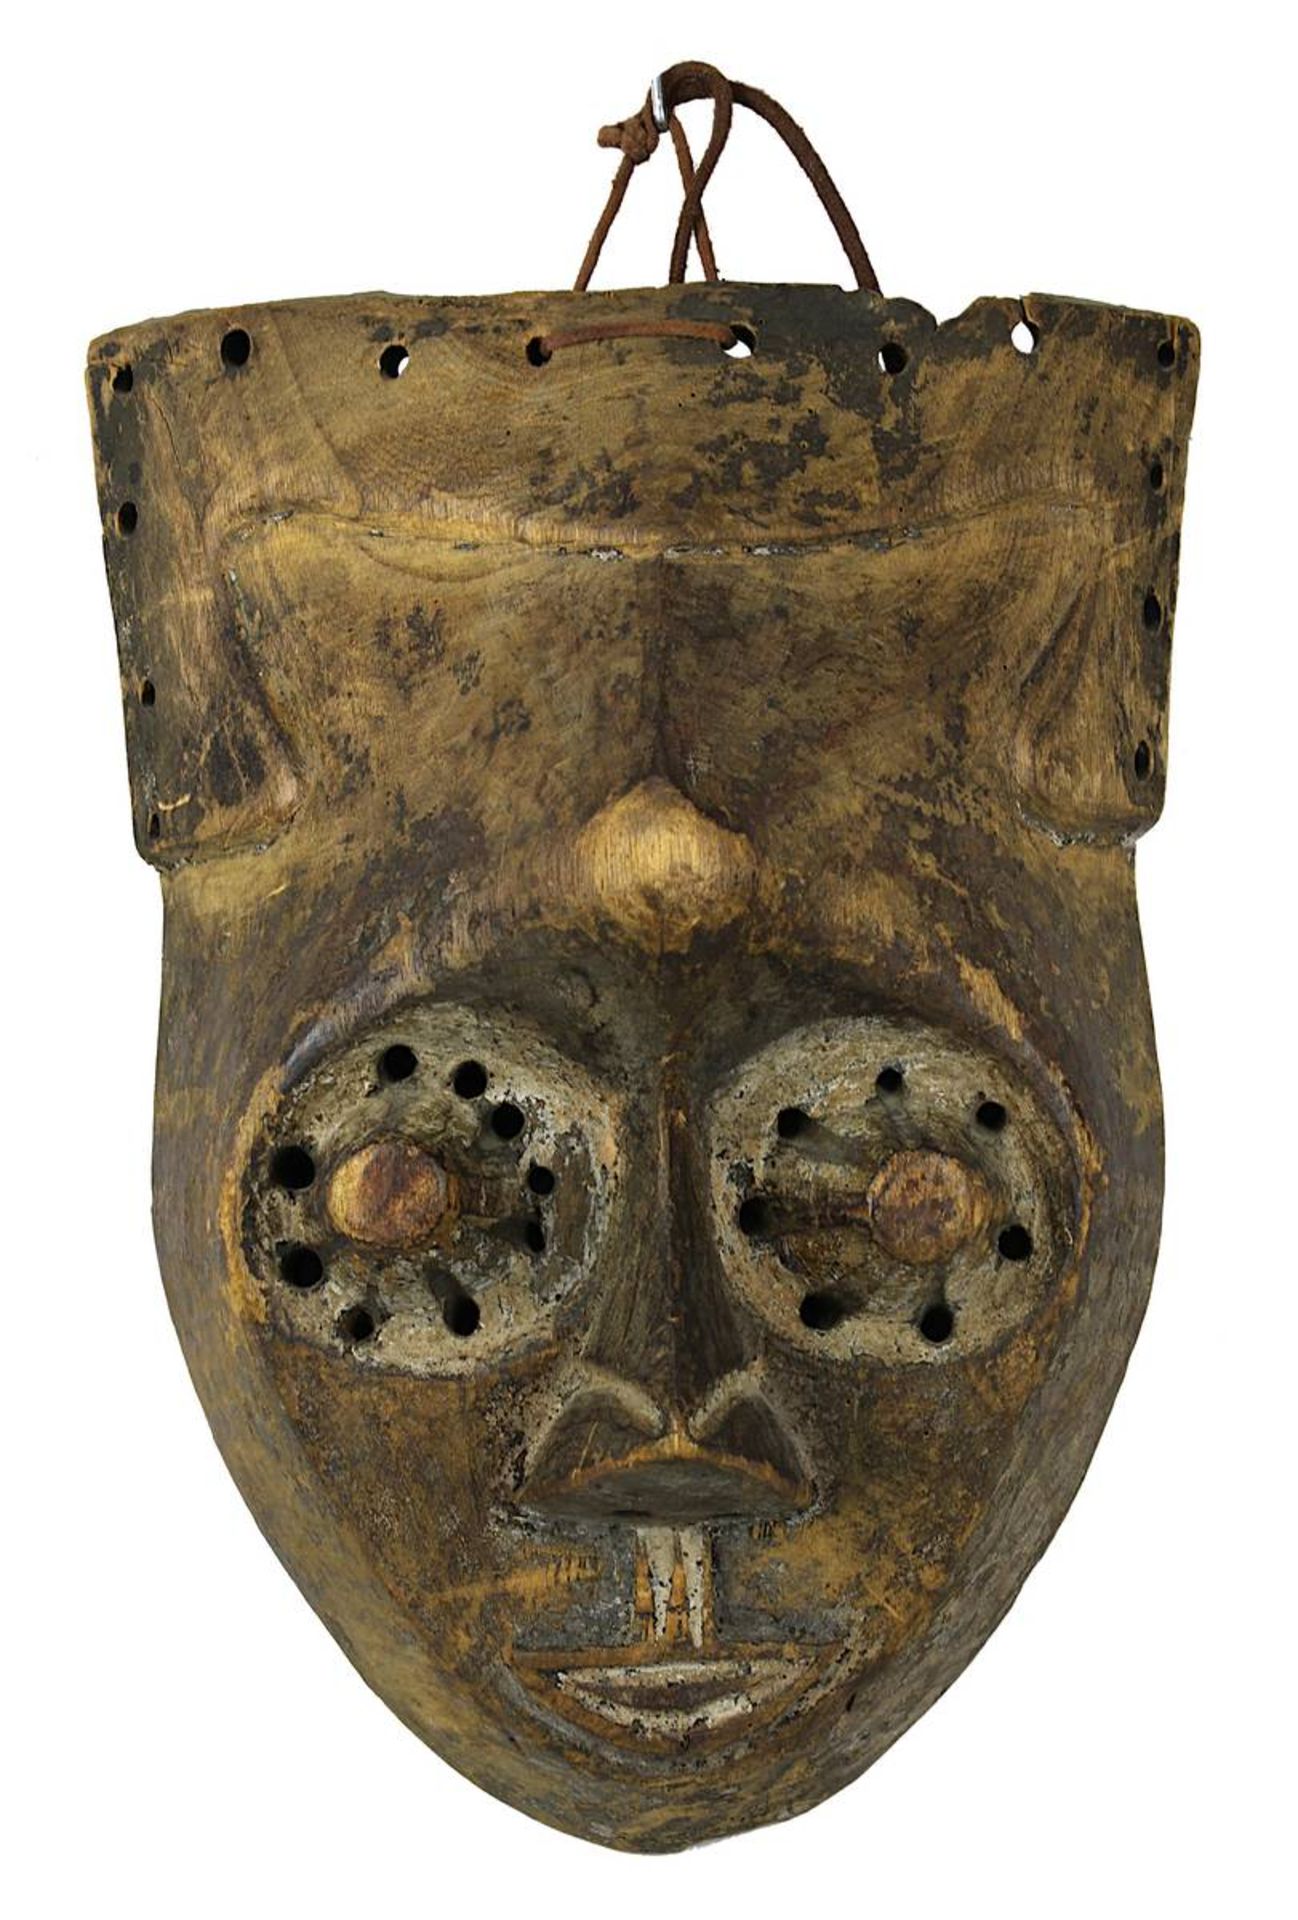 Maske Pwoom Itok der Kuba, D. R. Kongo, Holz geschnitzt und mit Resten einer dunklen und